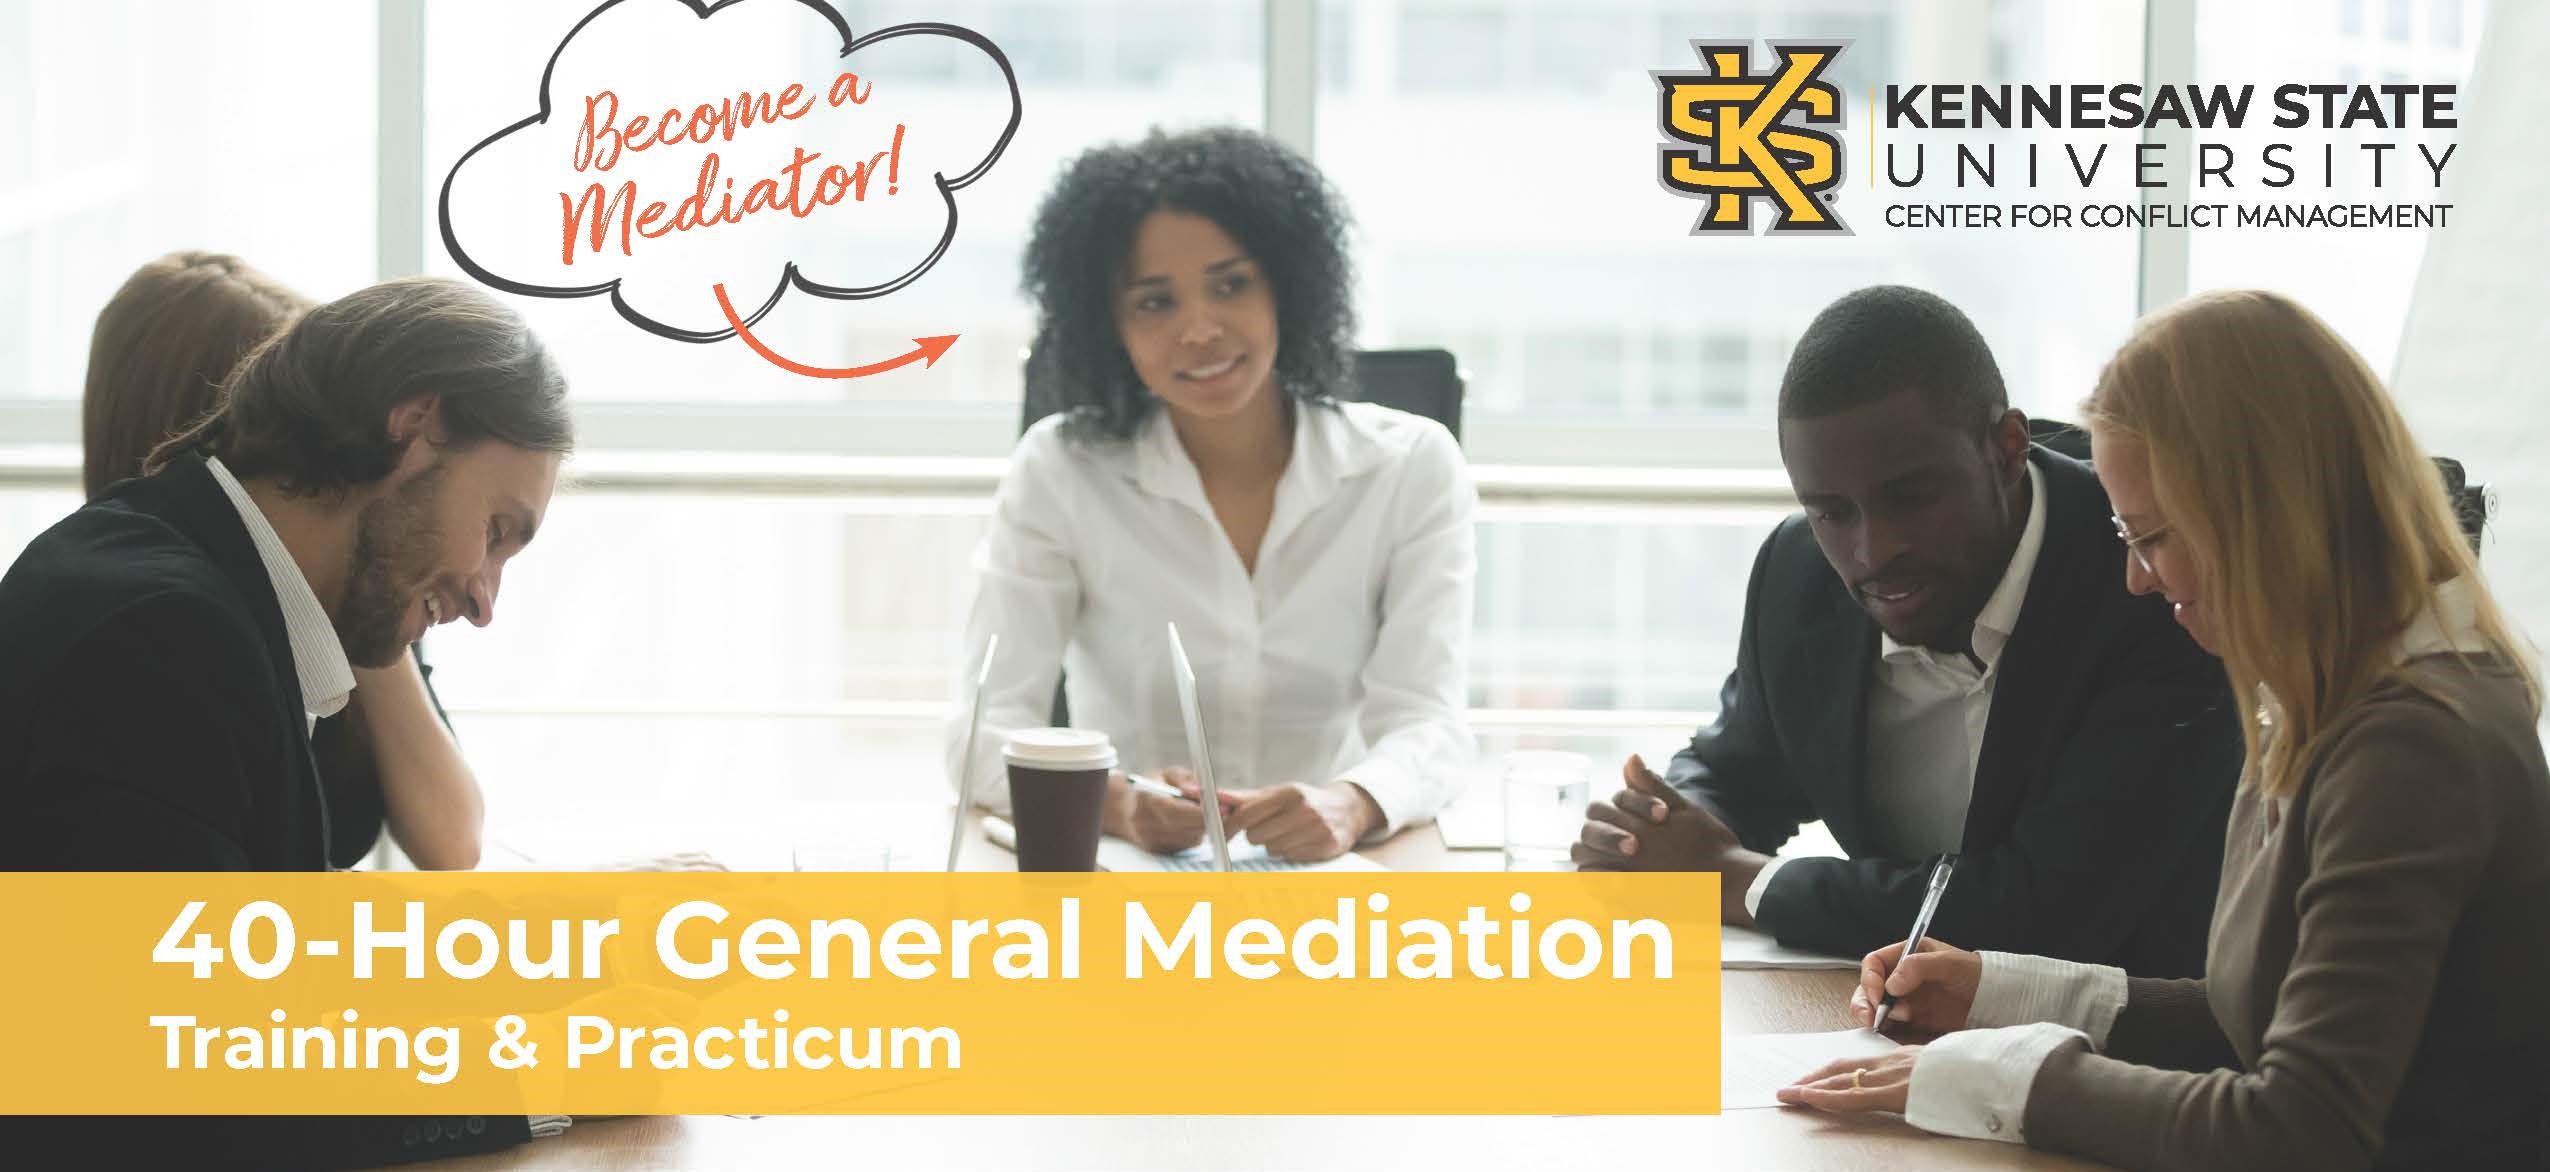 General Mediation Training November 2021